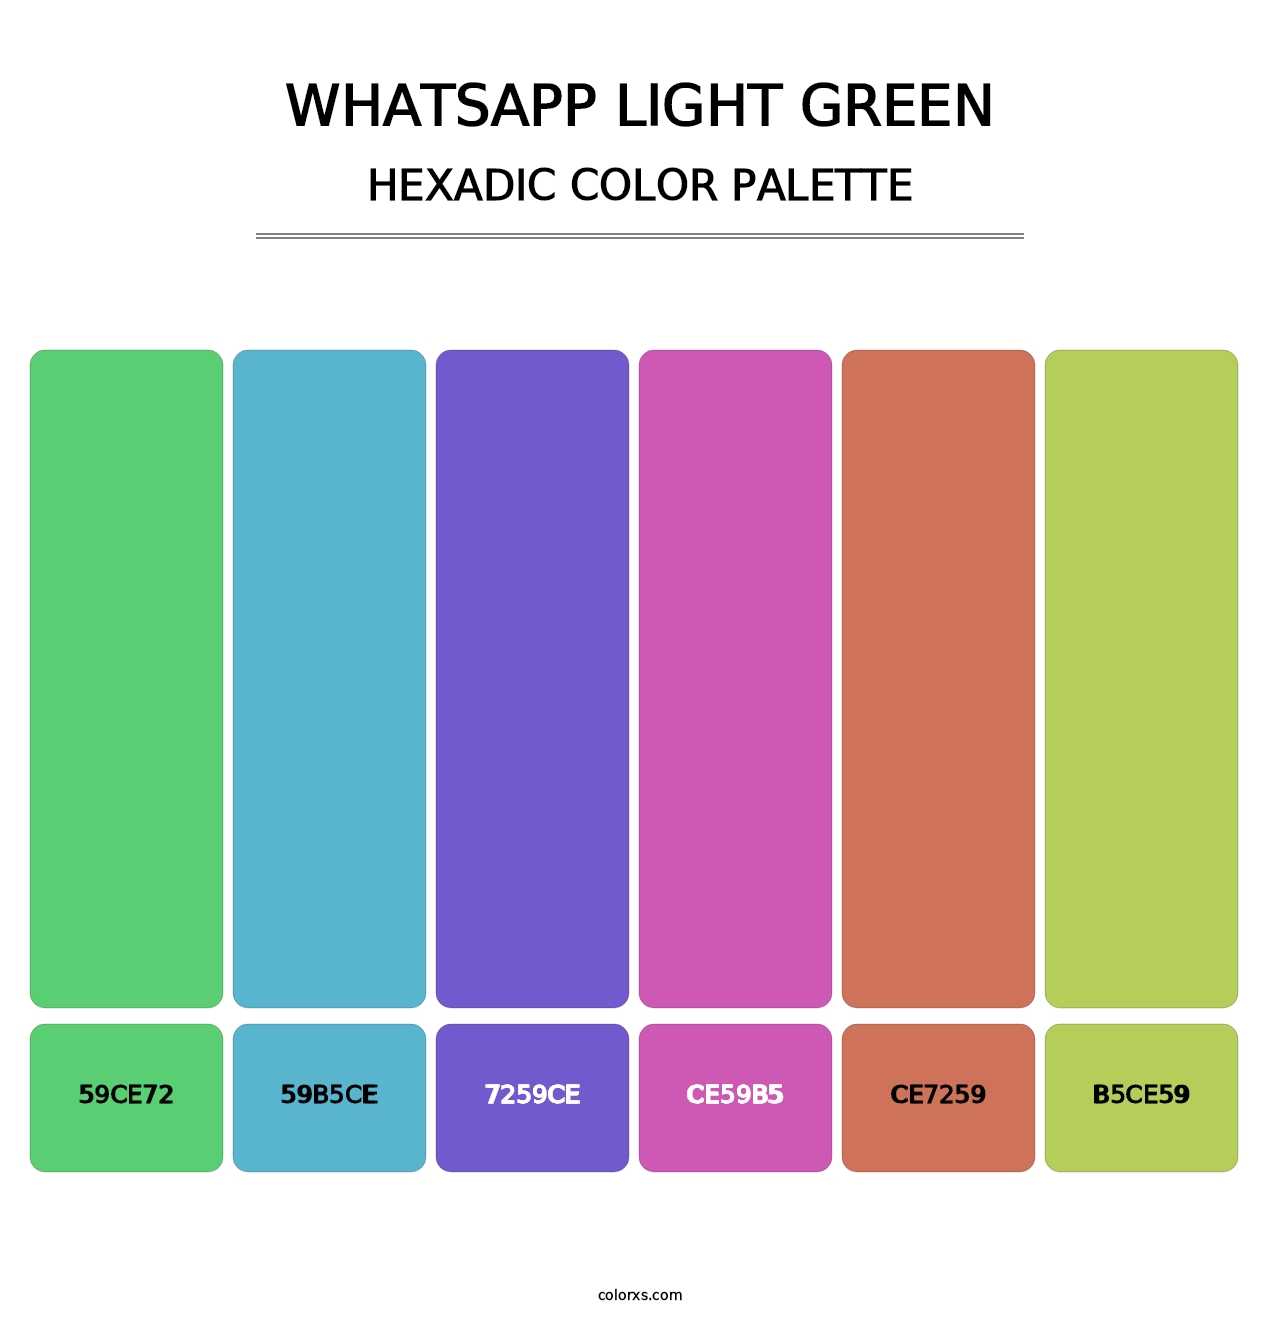 WhatsApp Light Green - Hexadic Color Palette